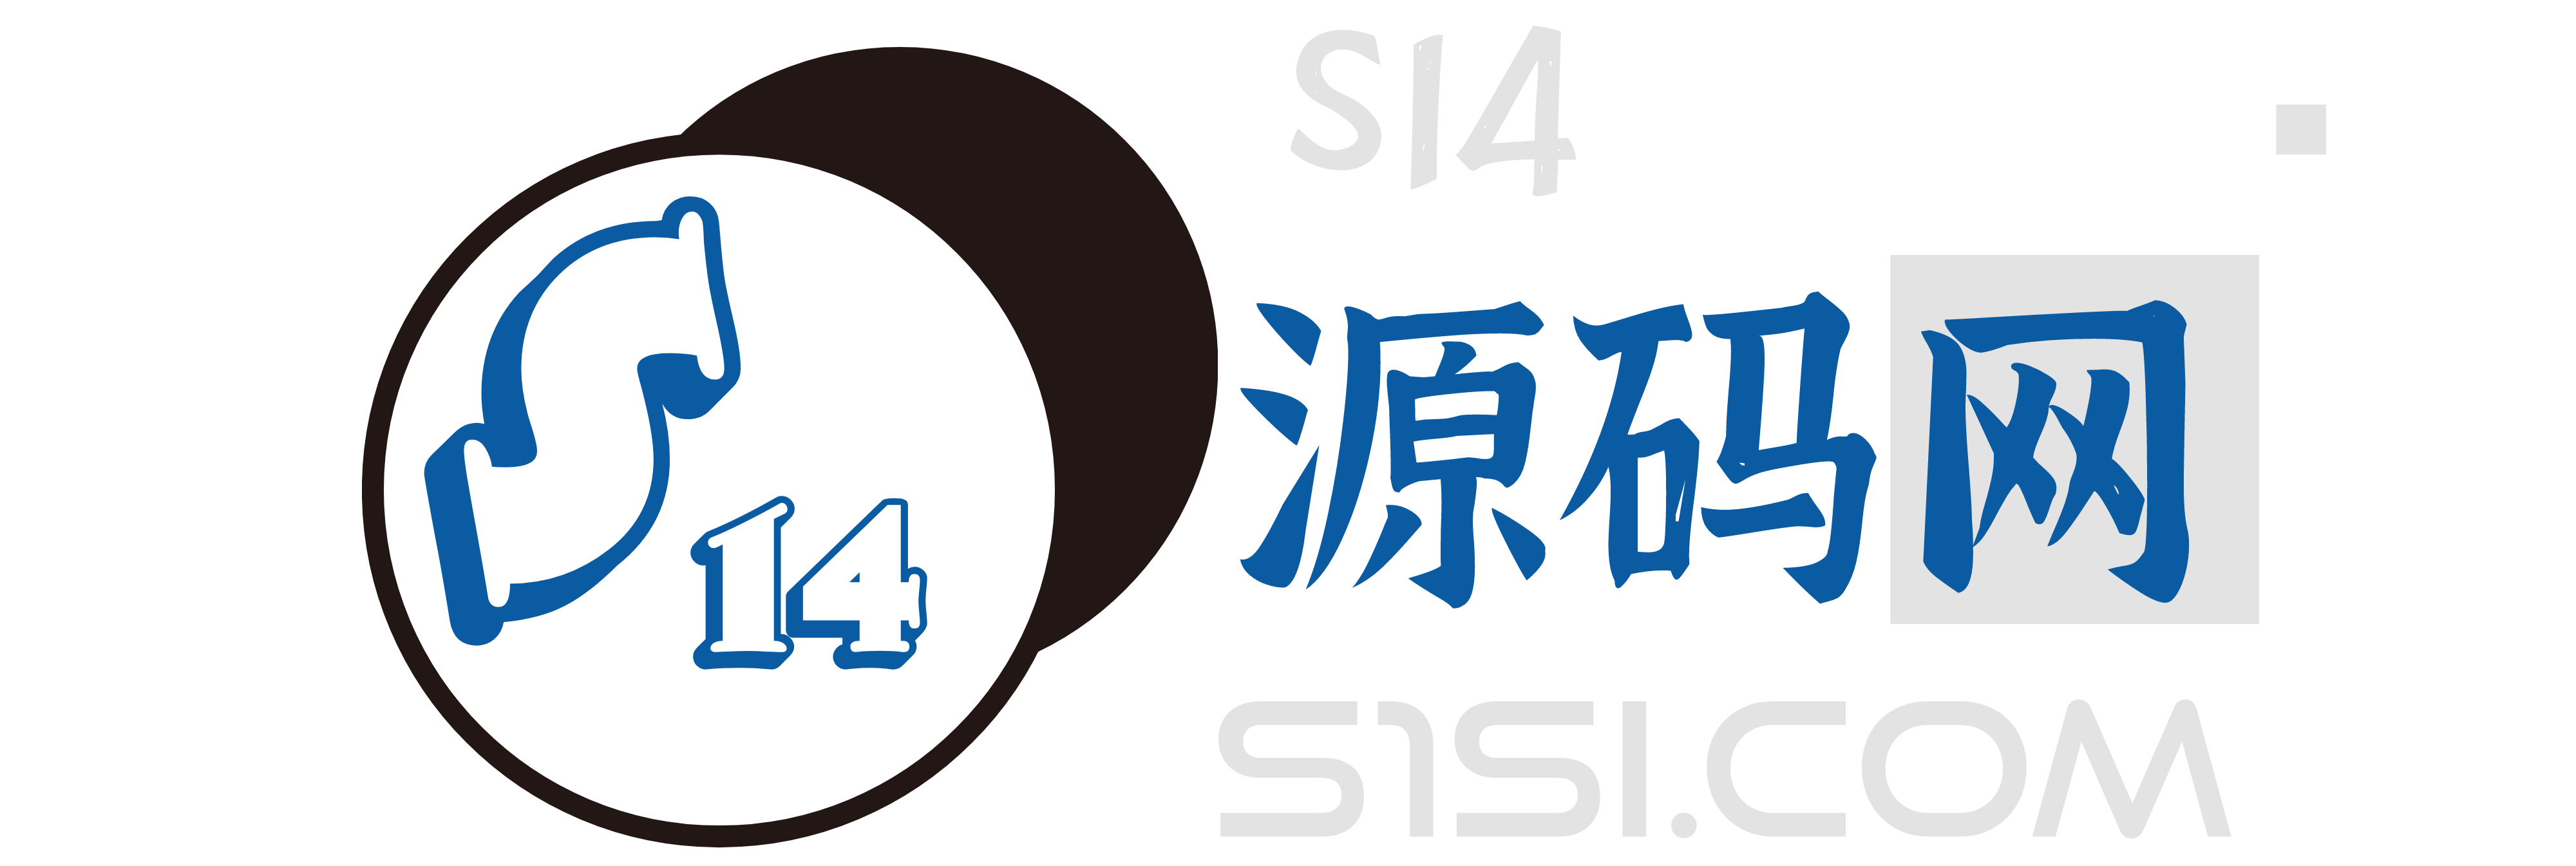 S14源码网-免费源码资源，优质设计素材，实用软件分享网